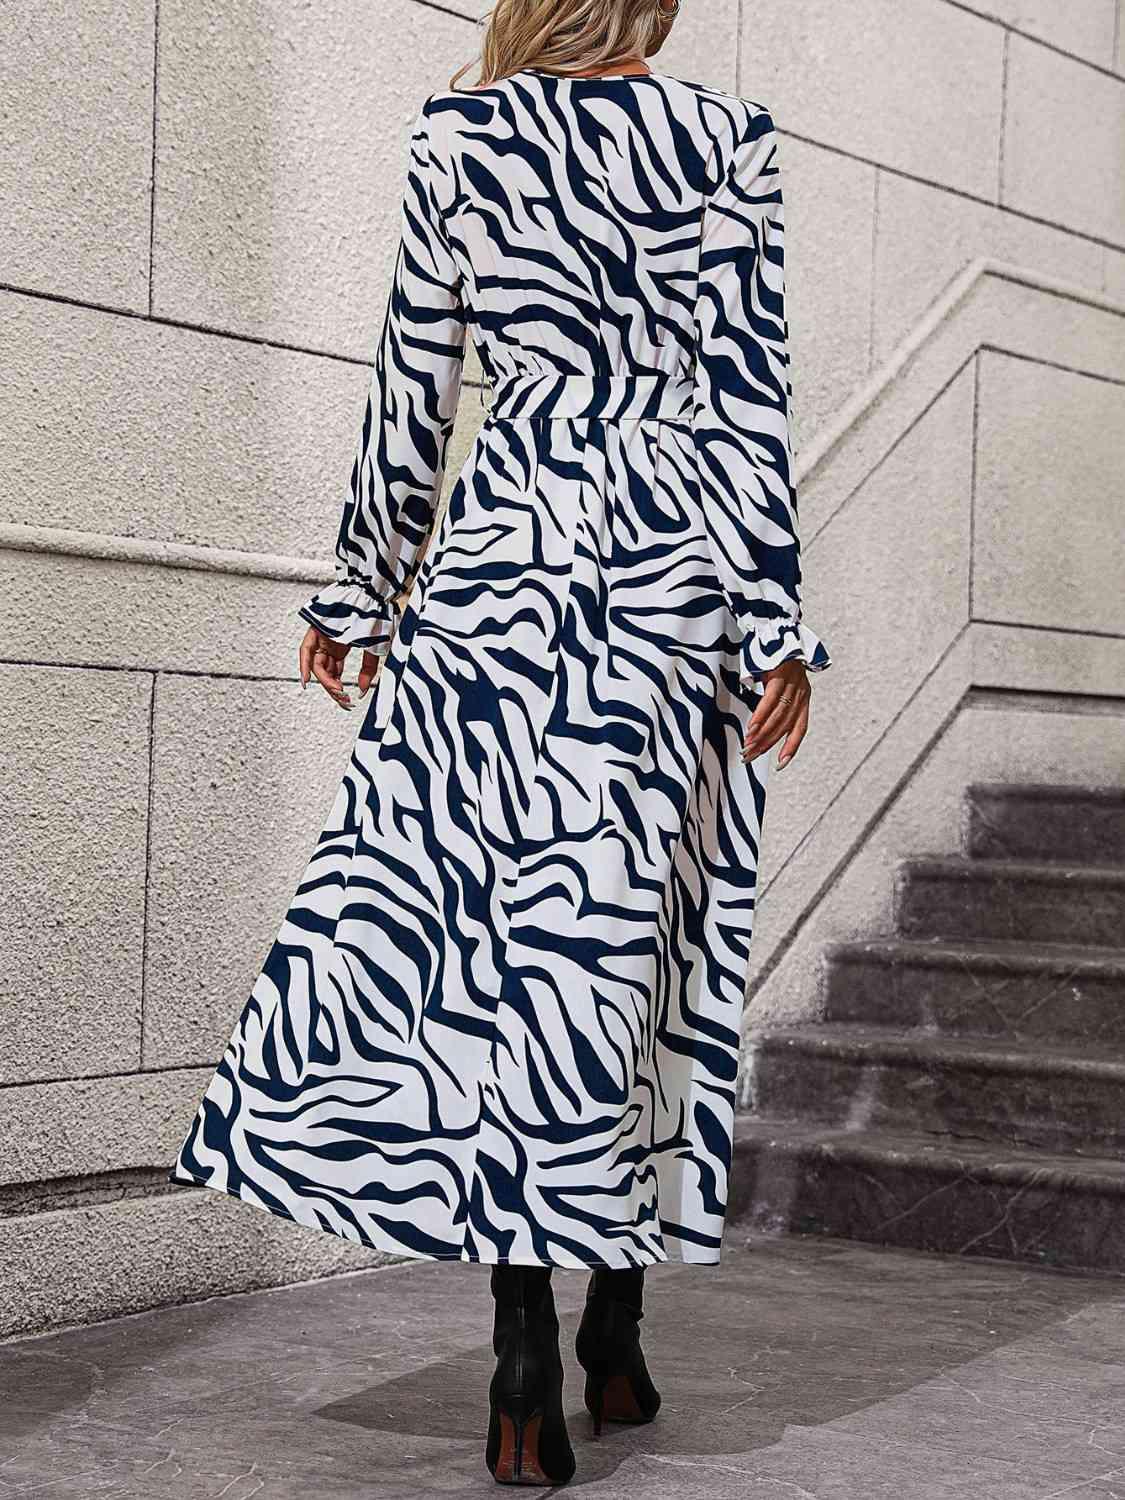 a woman wearing a zebra print dress